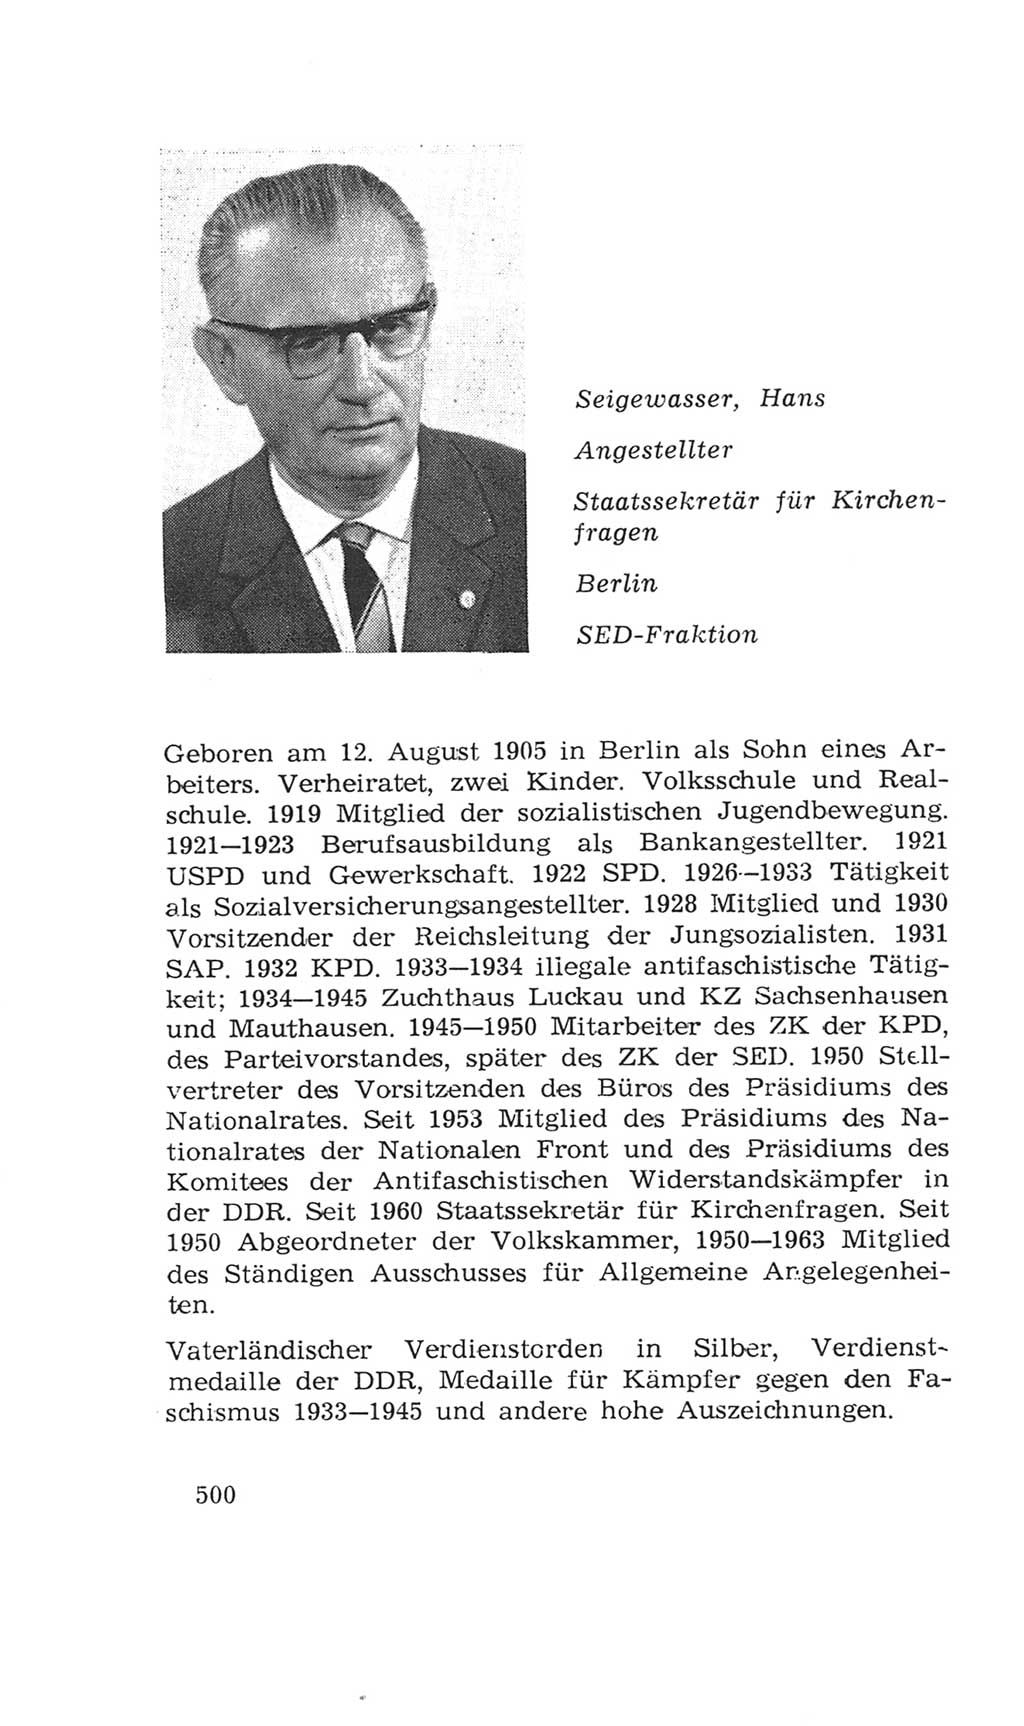 Volkskammer (VK) der Deutschen Demokratischen Republik (DDR), 4. Wahlperiode 1963-1967, Seite 500 (VK. DDR 4. WP. 1963-1967, S. 500)